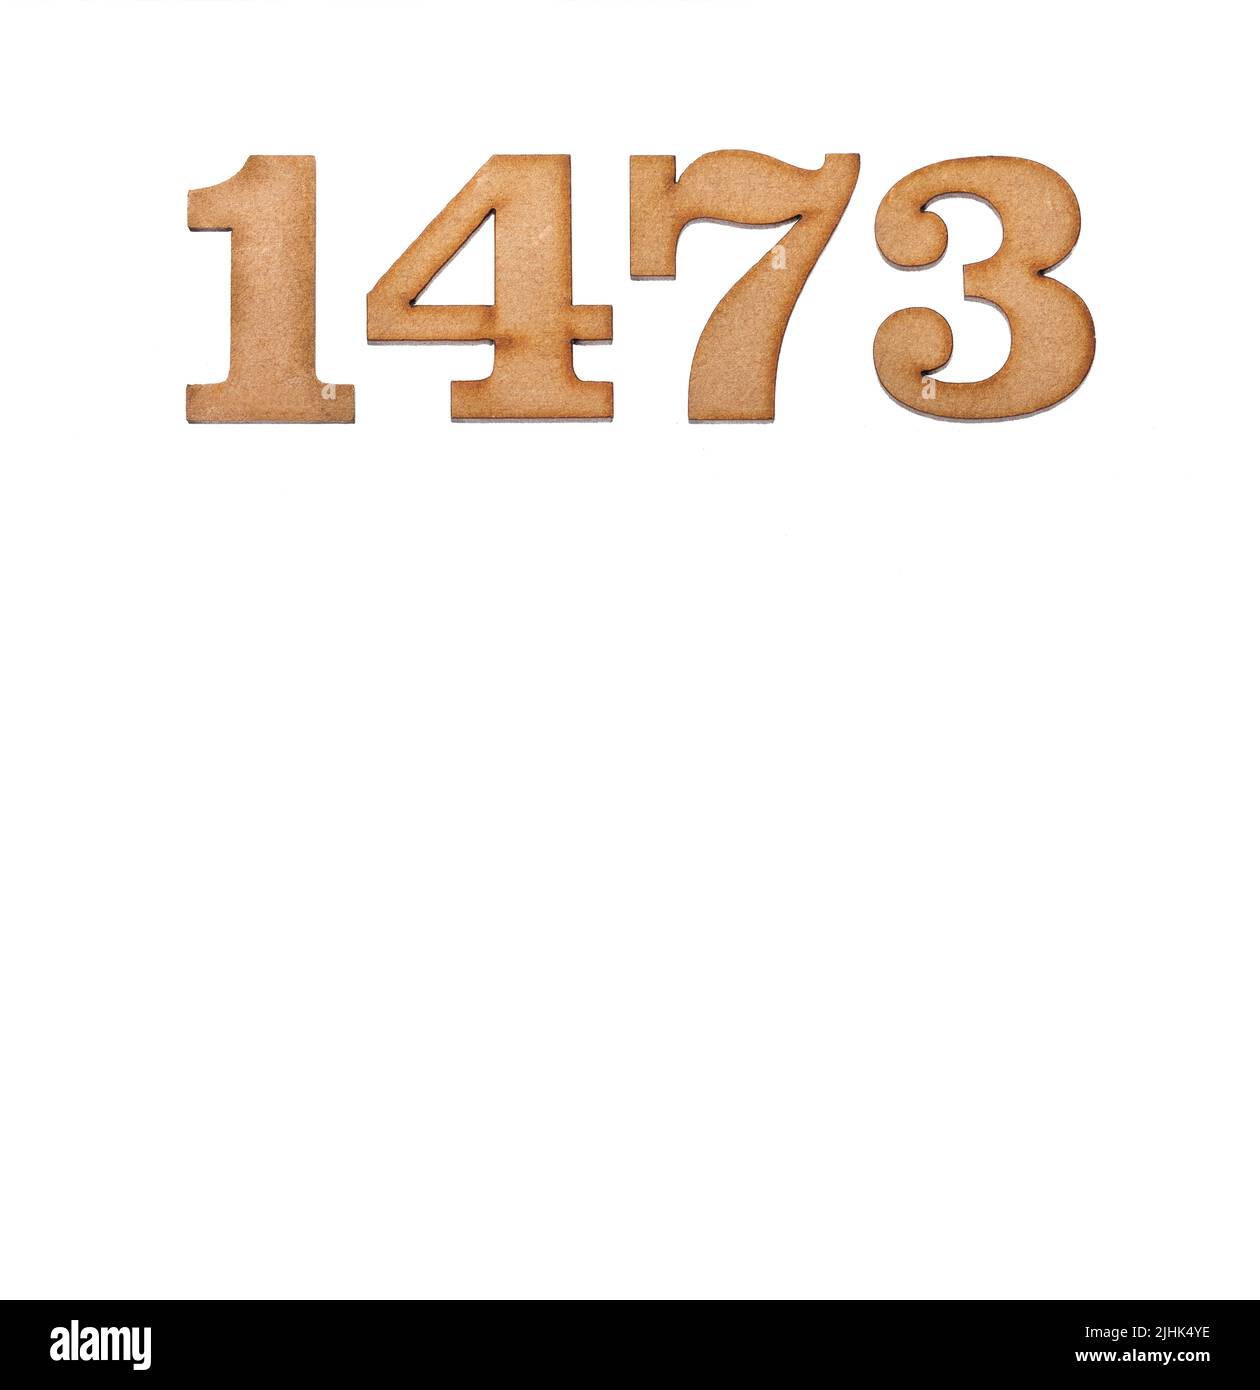 Nummer 1473 aus Holz, isoliert auf weißem Hintergrund Stockfoto